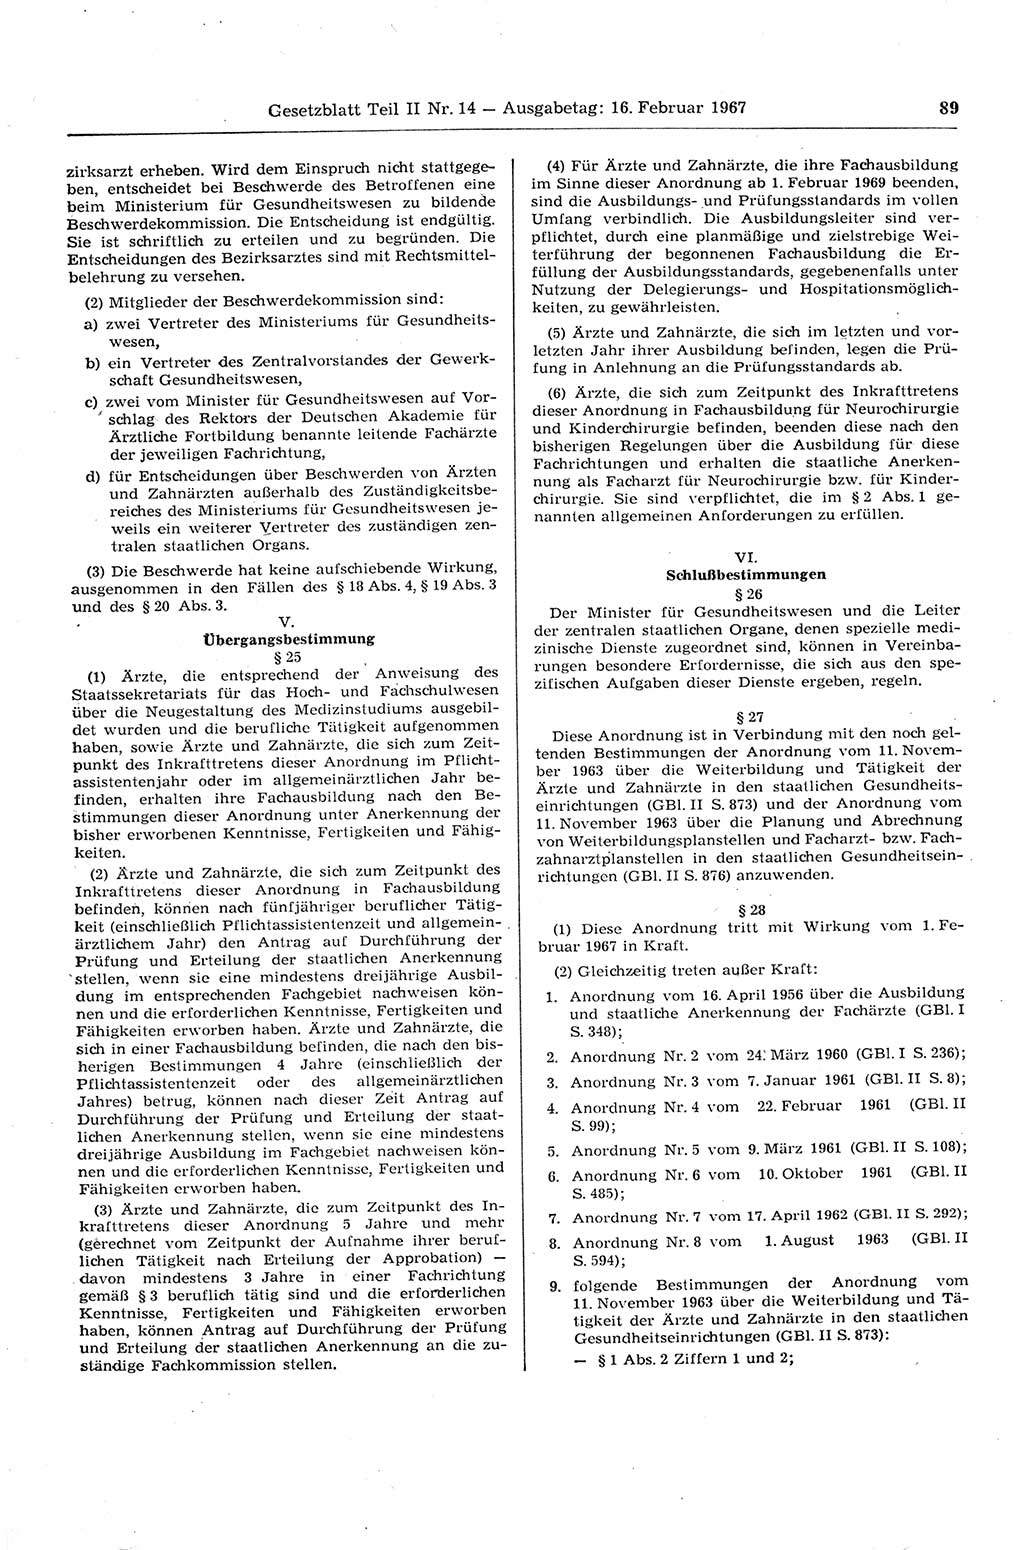 Gesetzblatt (GBl.) der Deutschen Demokratischen Republik (DDR) Teil ⅠⅠ 1967, Seite 89 (GBl. DDR ⅠⅠ 1967, S. 89)